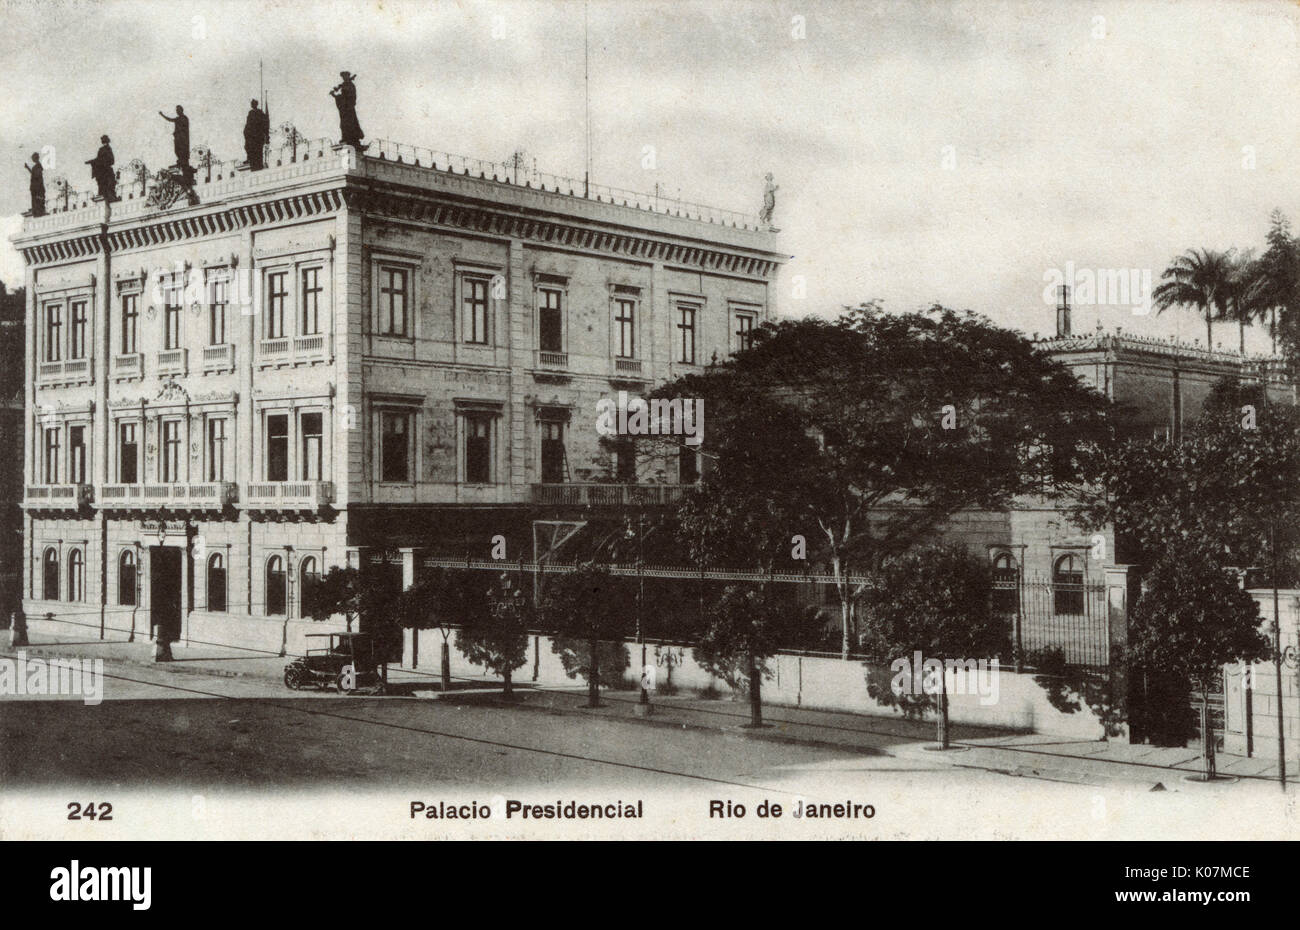 Rio de Janeiro, Brasil - El Palacio Presidencial. Fecha: circa 1910s Foto de stock